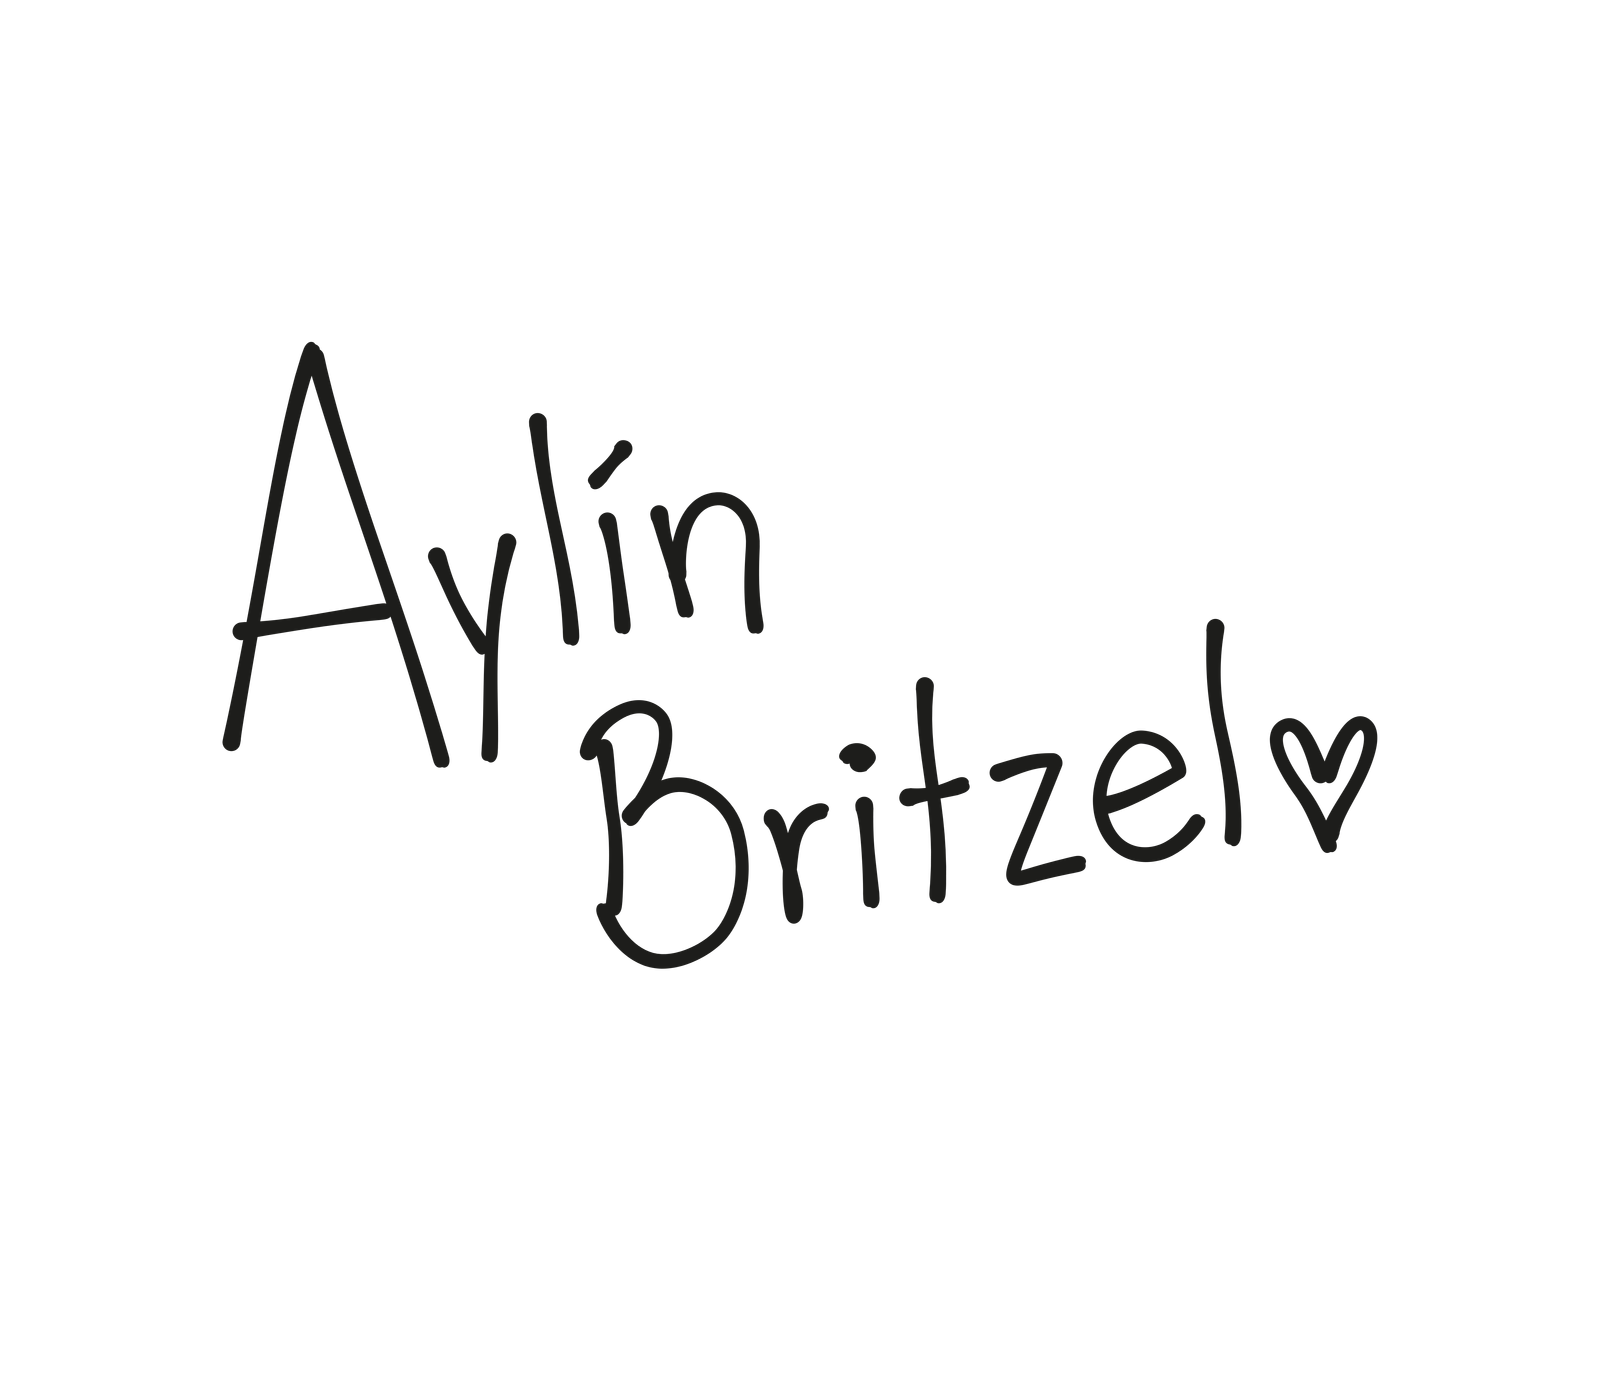 Logo Aylin Britzel